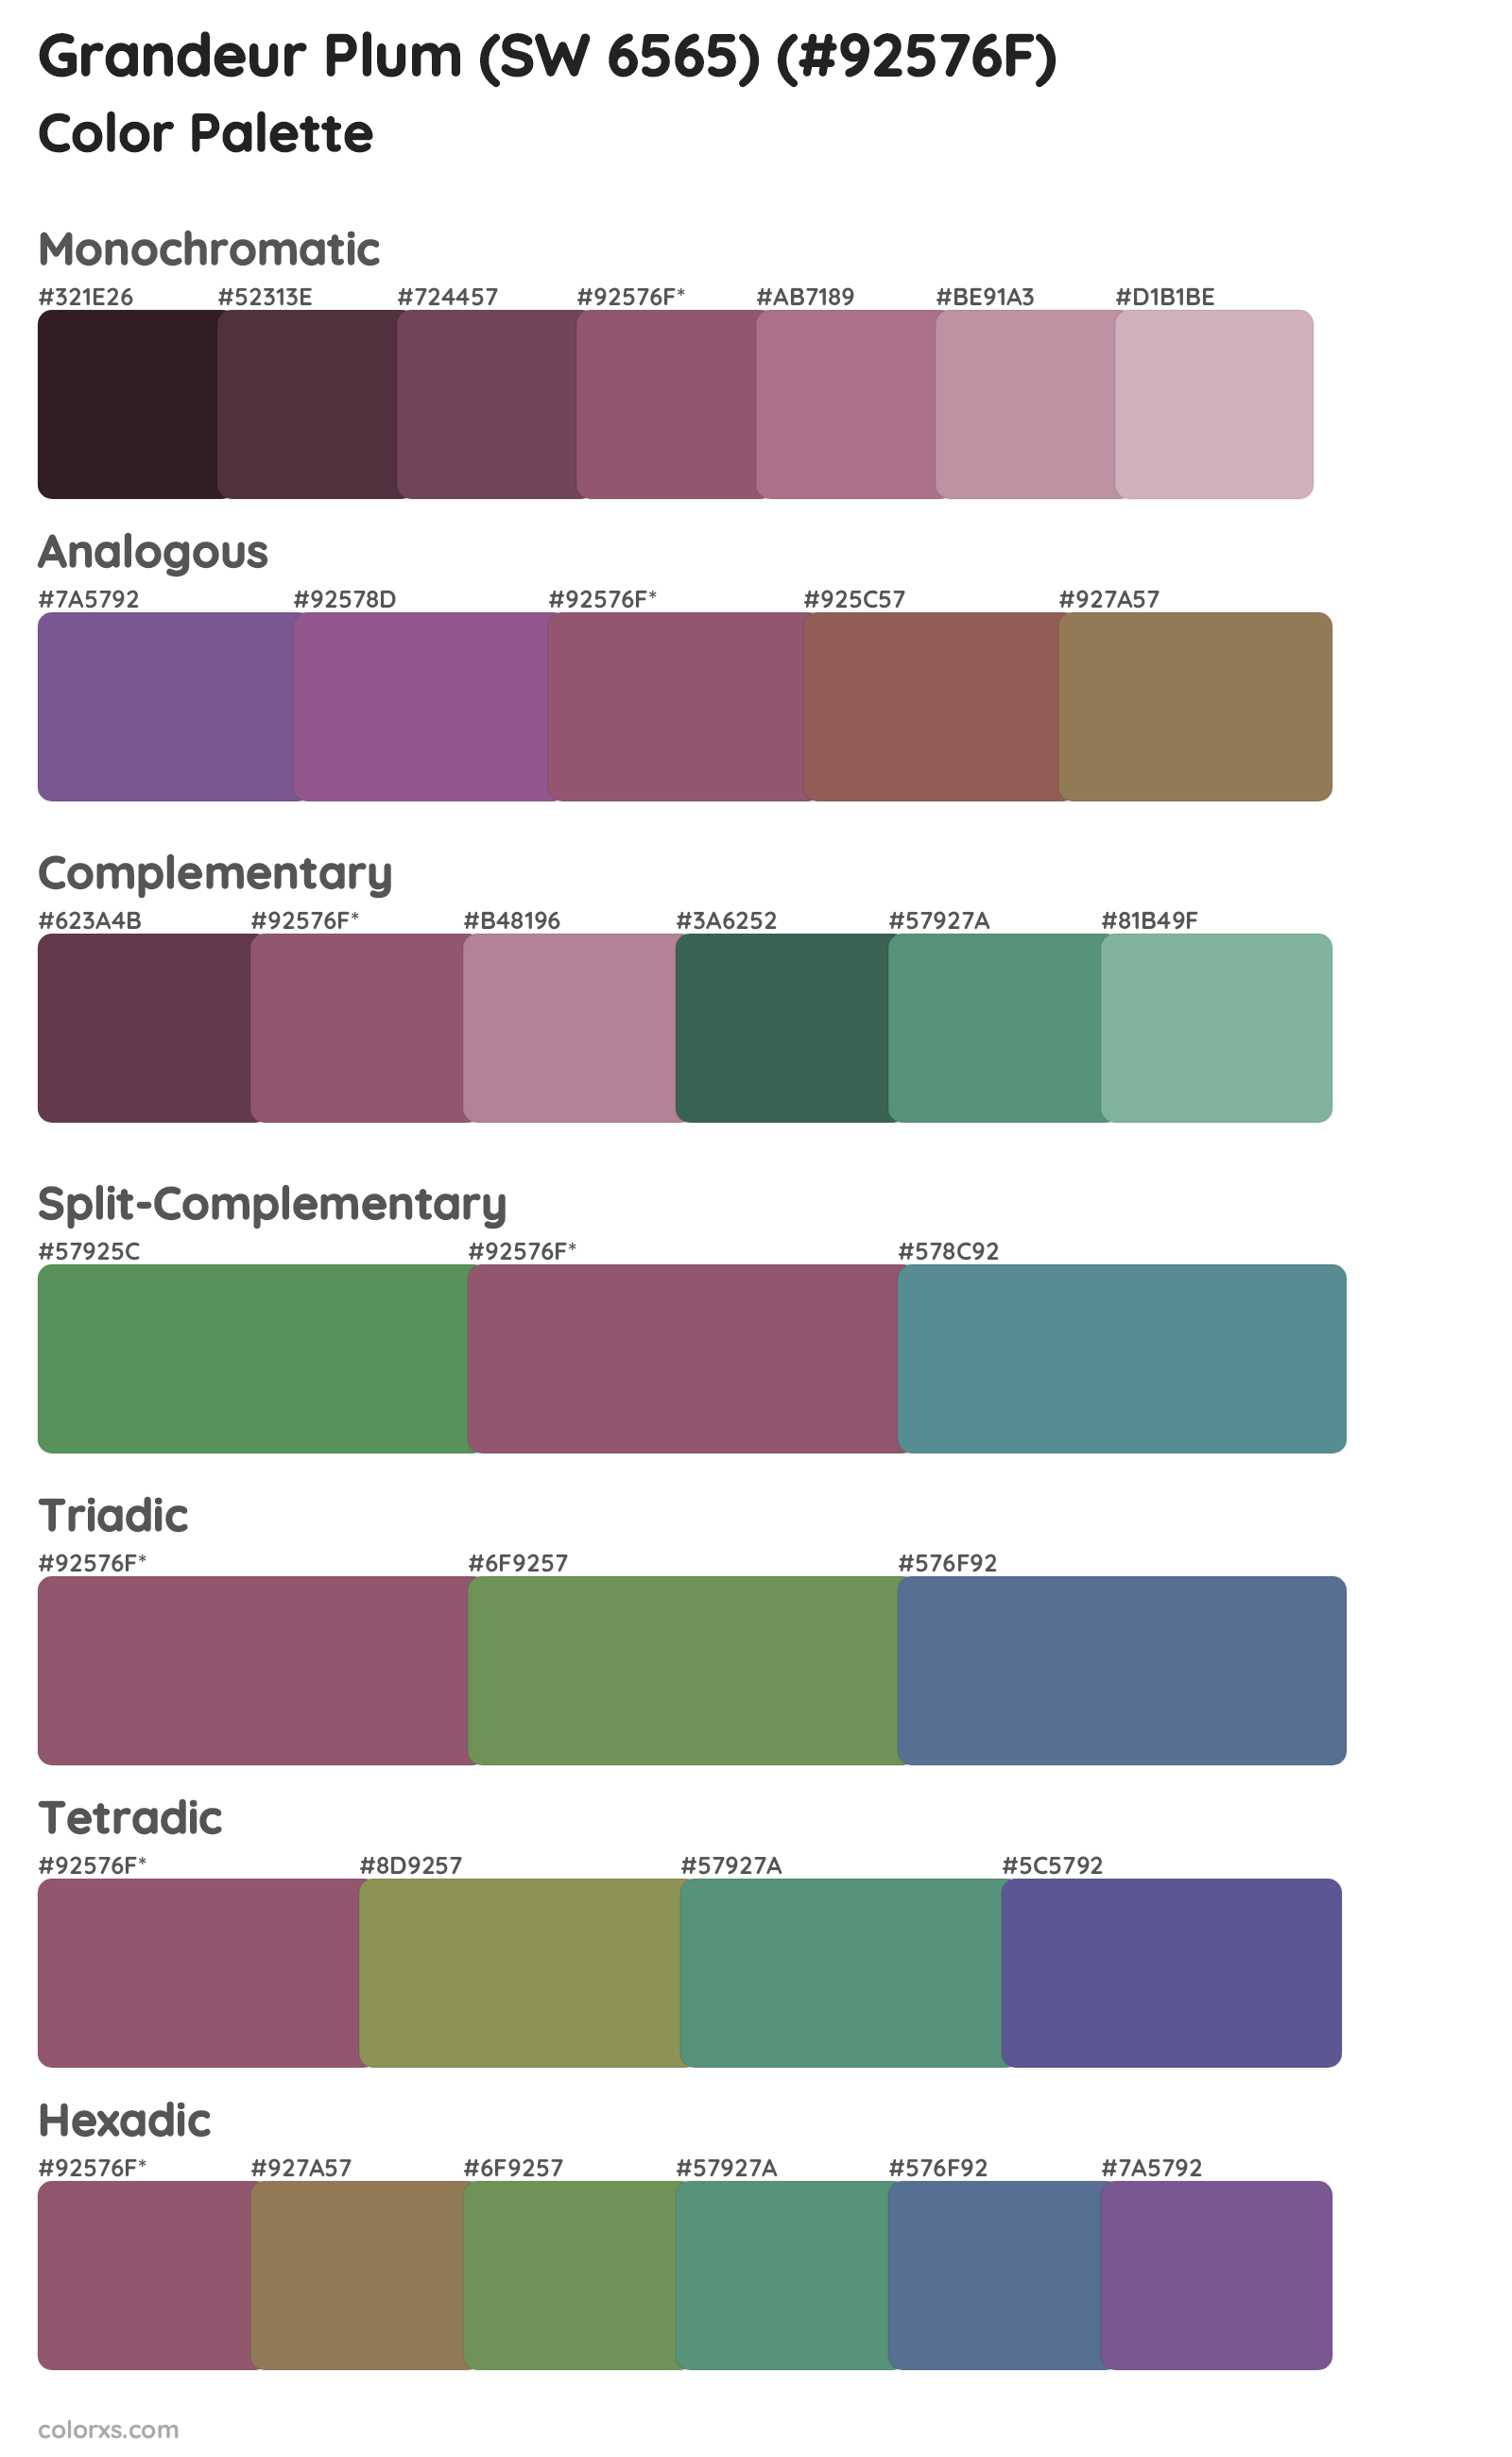 Grandeur Plum (SW 6565) Color Scheme Palettes